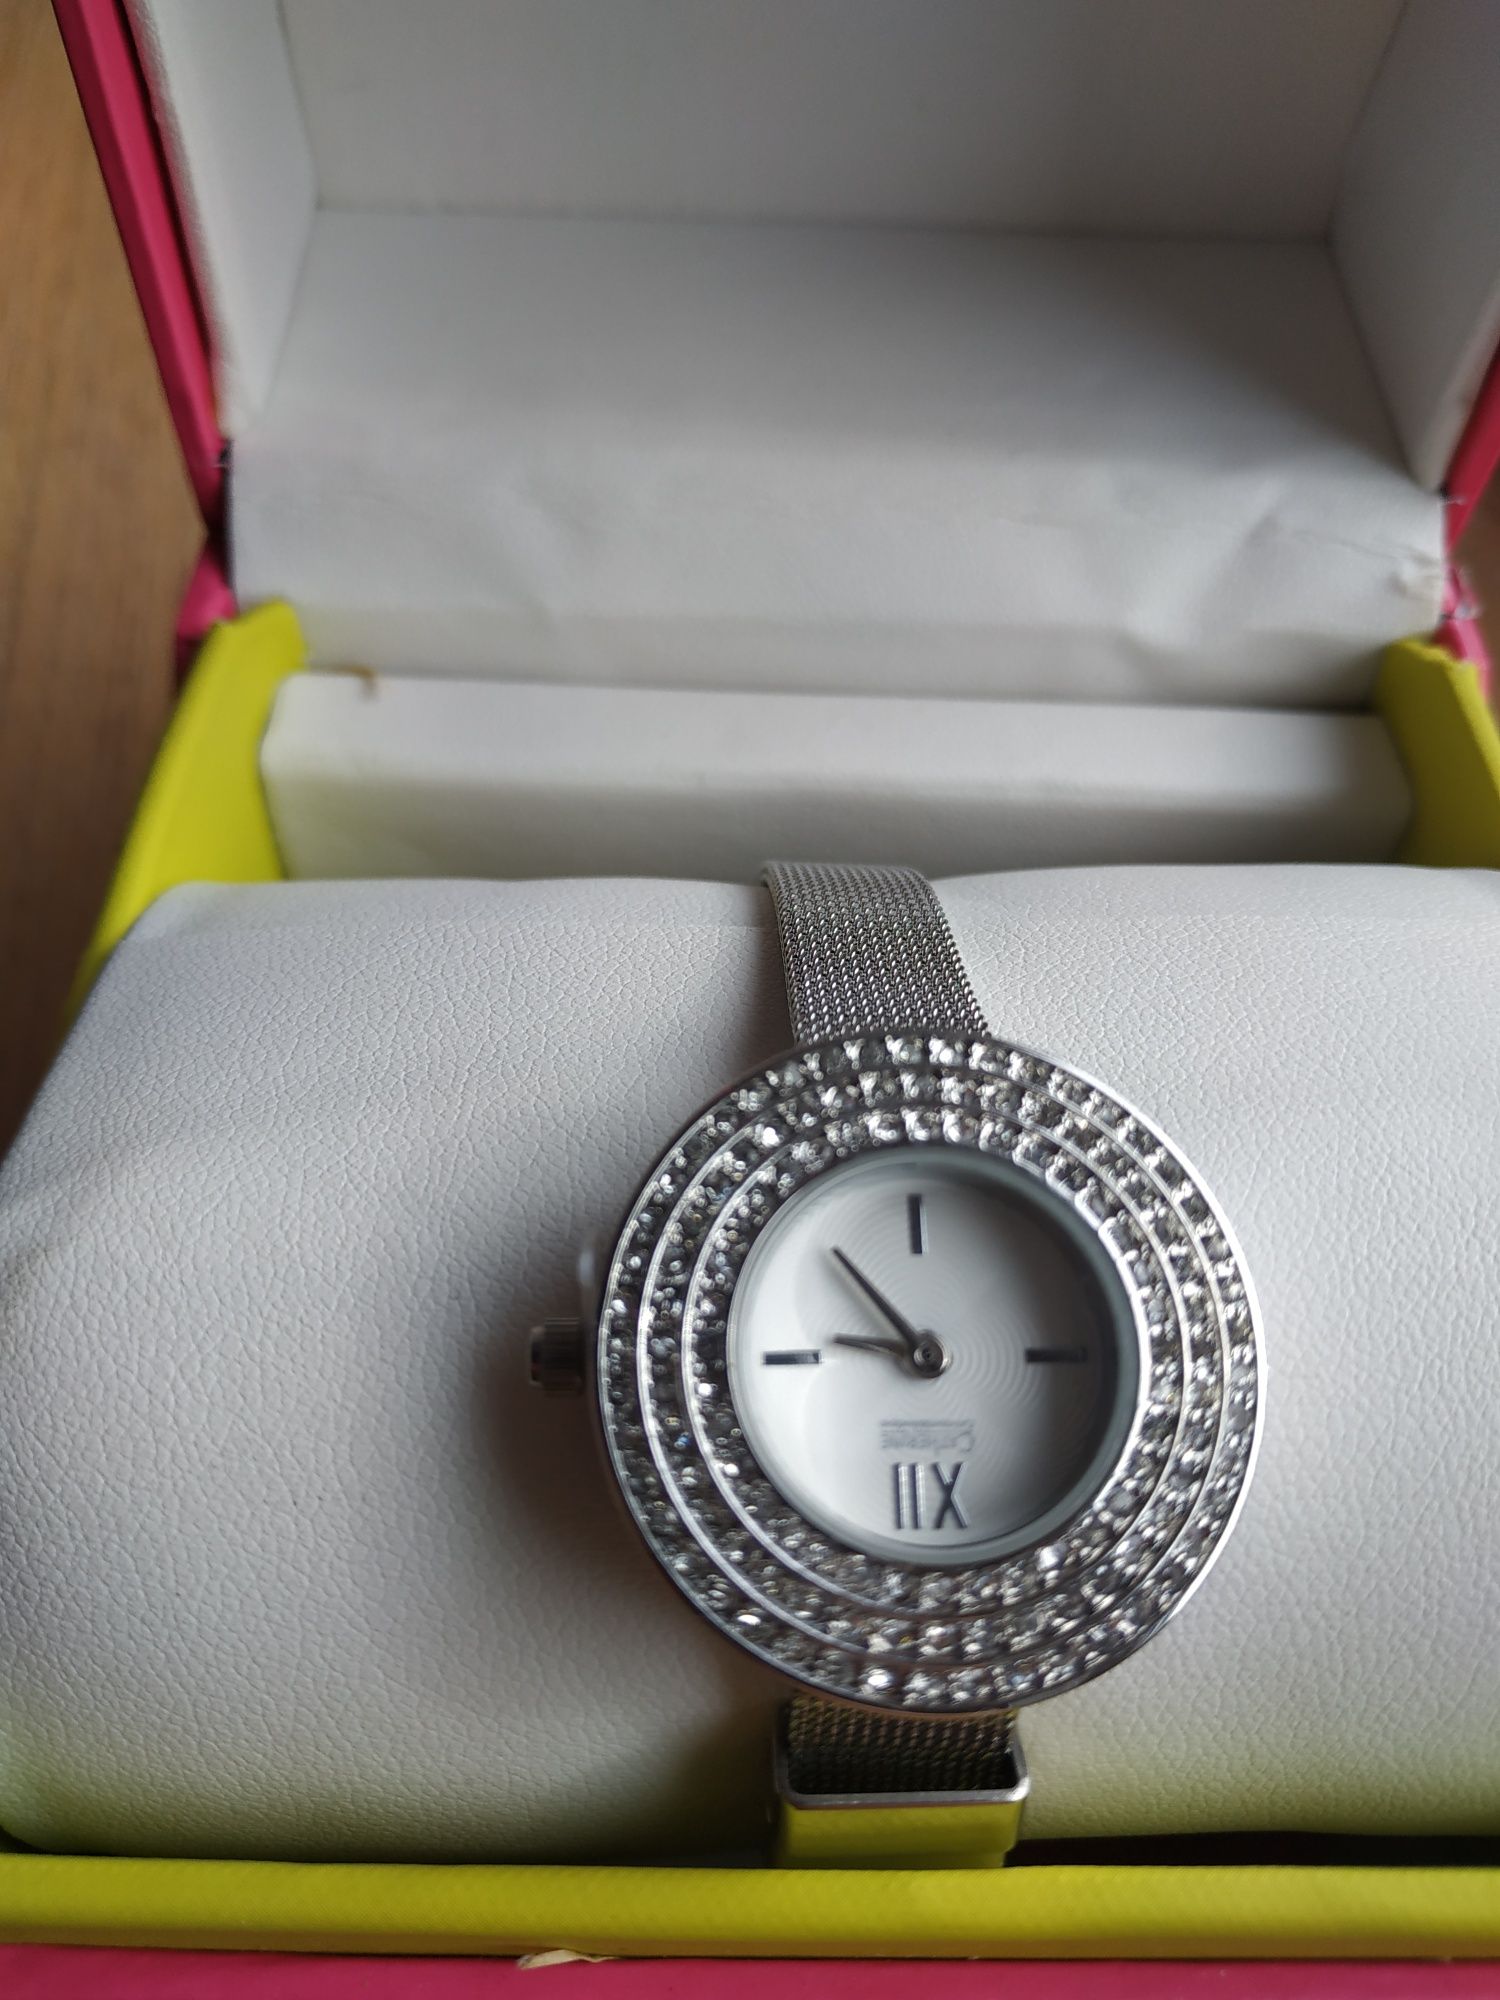 Nowy zegarek Katherine z kryształkami, ze stali, z metką